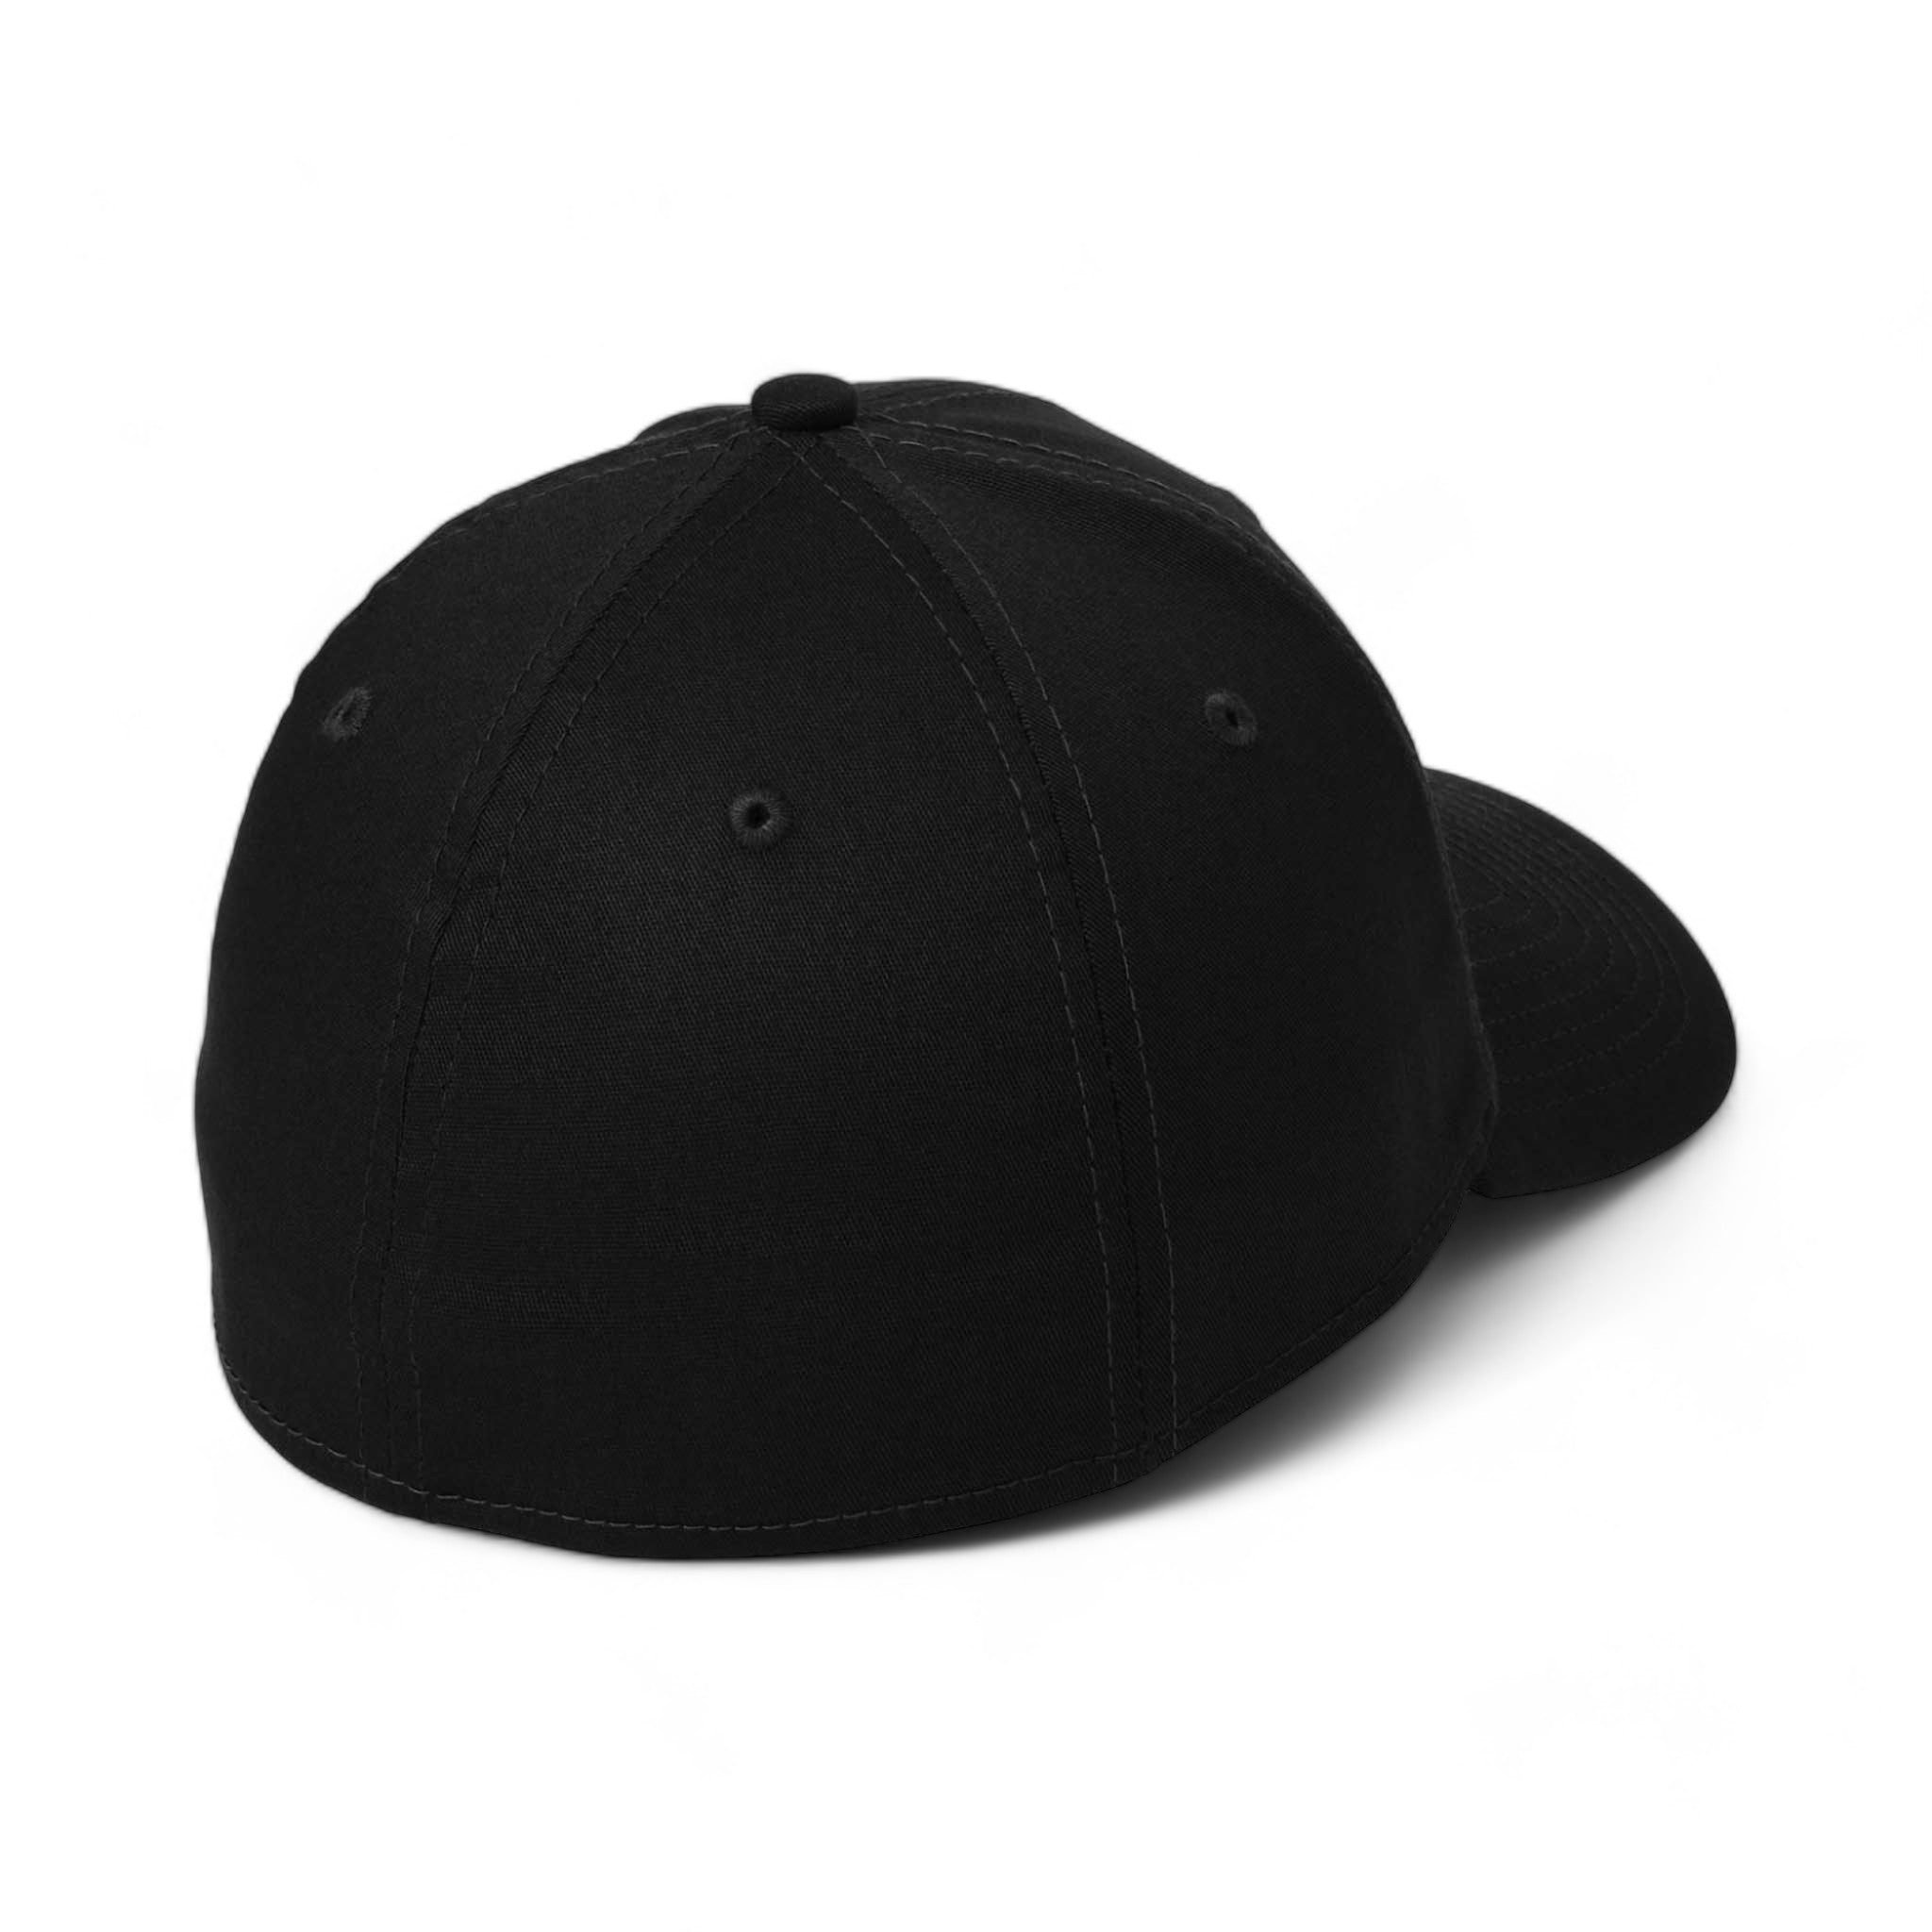 Back view of New Era NE1000 custom hat in black